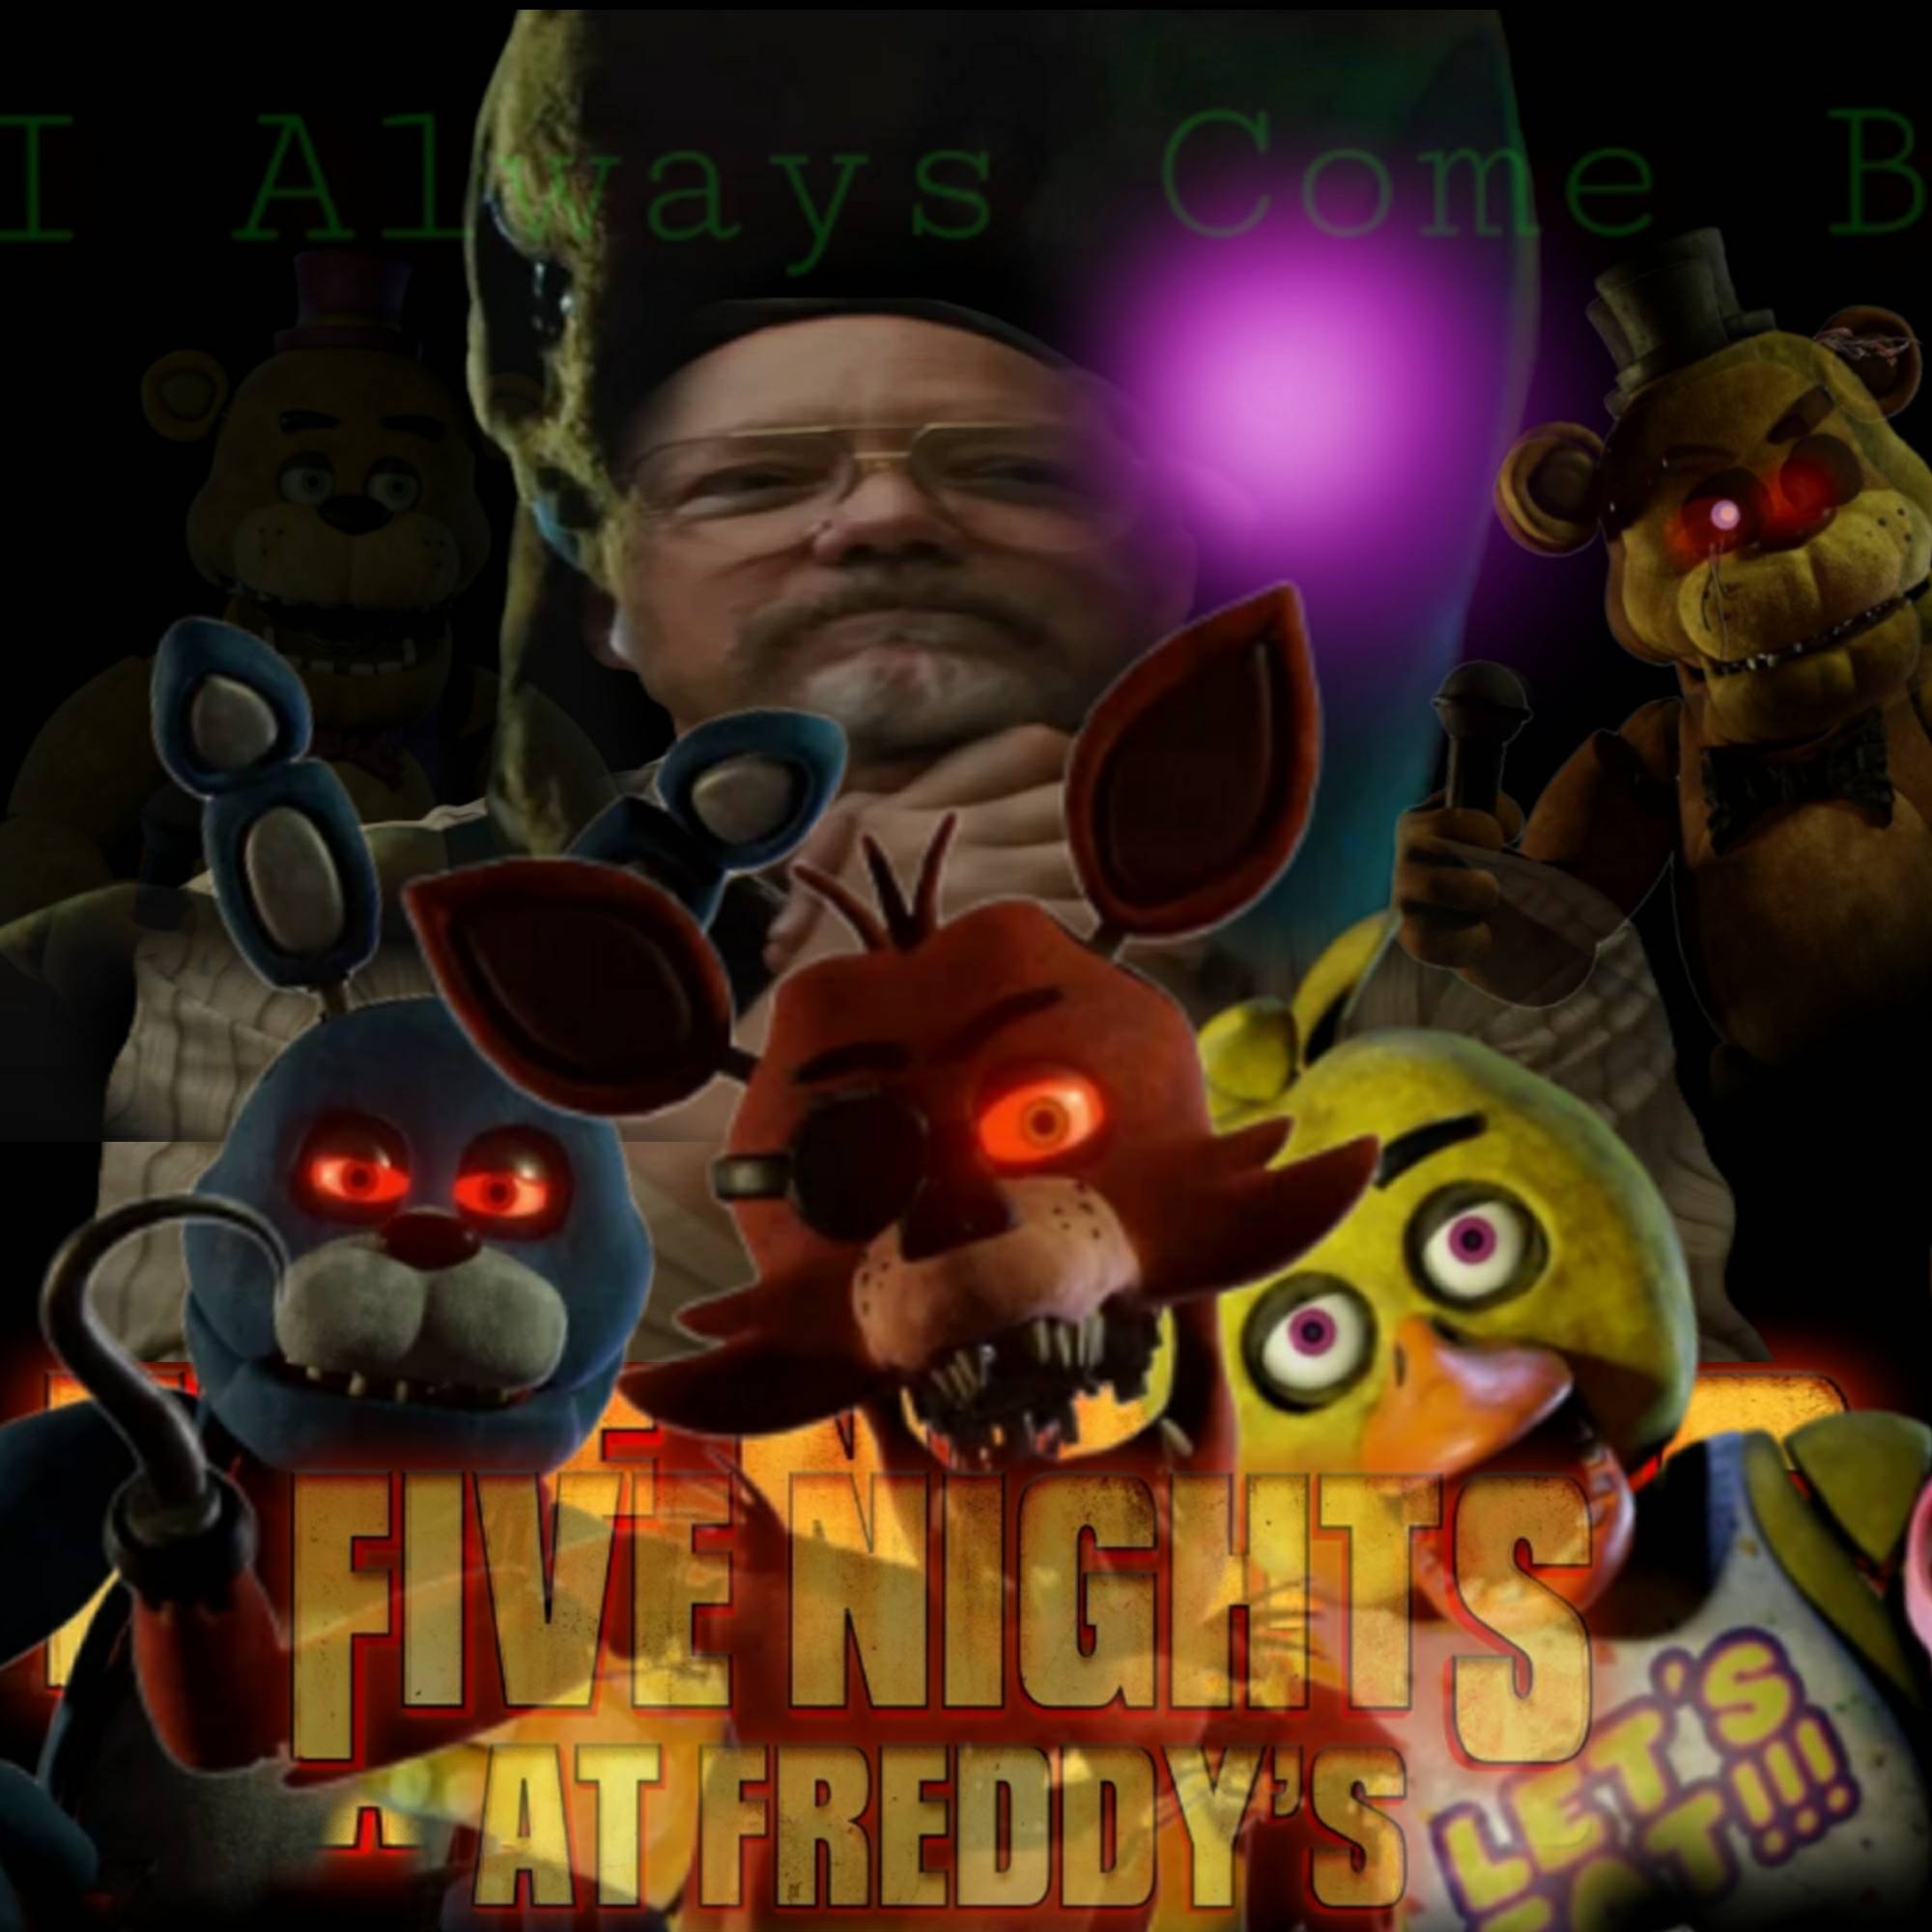 Fnaf movie) shadow freddy poster (edit) by galaxystudios78 on DeviantArt